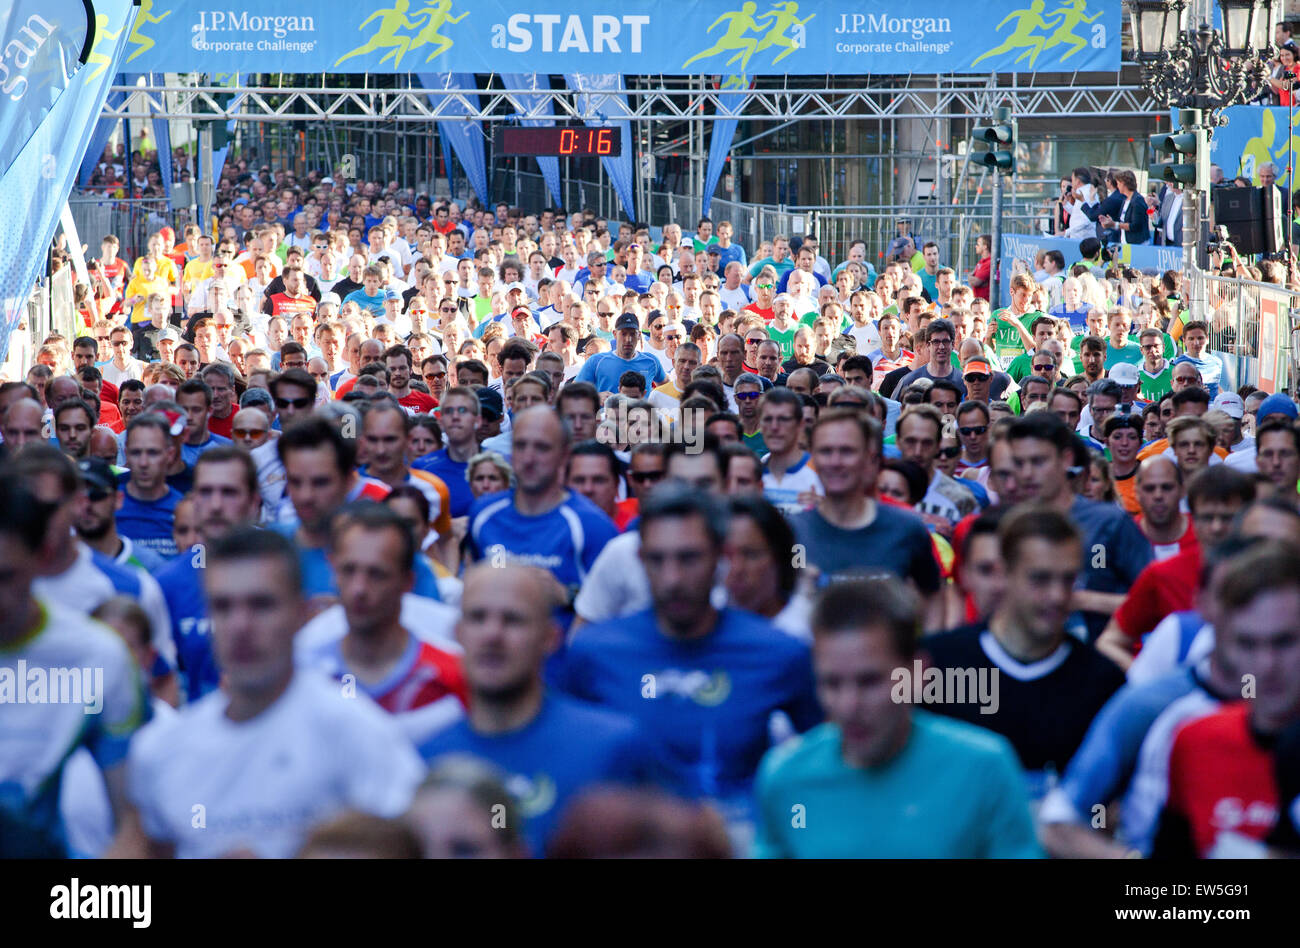 Einige der rund 70.000 Läufer Take off auf der 23. JP Morgan Corporate Challenge Lauf in Frankfurt Am Main, Deutschland, 17. Juni 2015. Laut Veranstalter kommen Mitarbeiter aus mehr als 2.600 Unternehmen aus mehr als 400 Städten für die worl Stockfoto